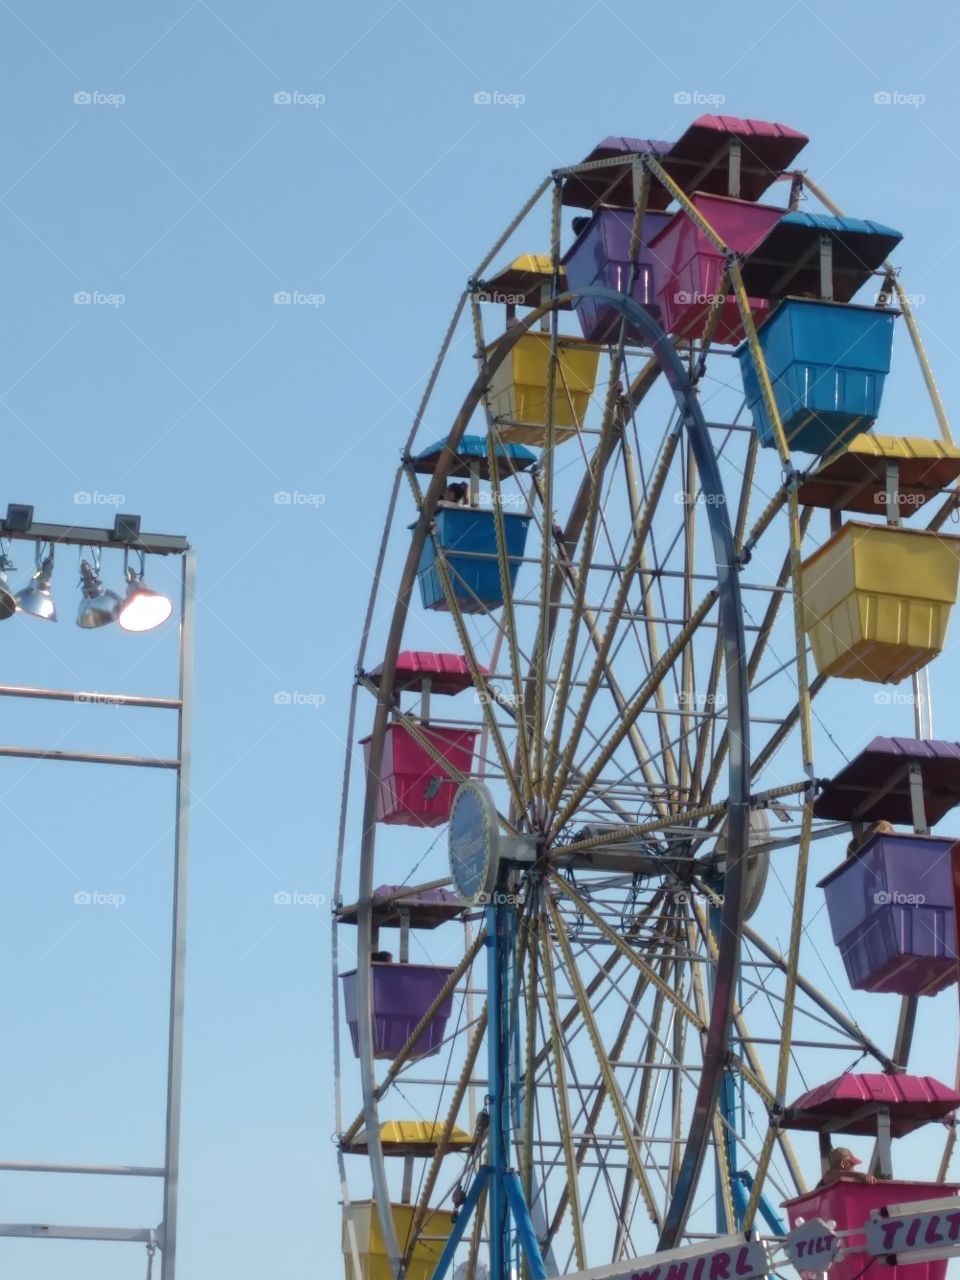 multicolor Ferris Wheel cars